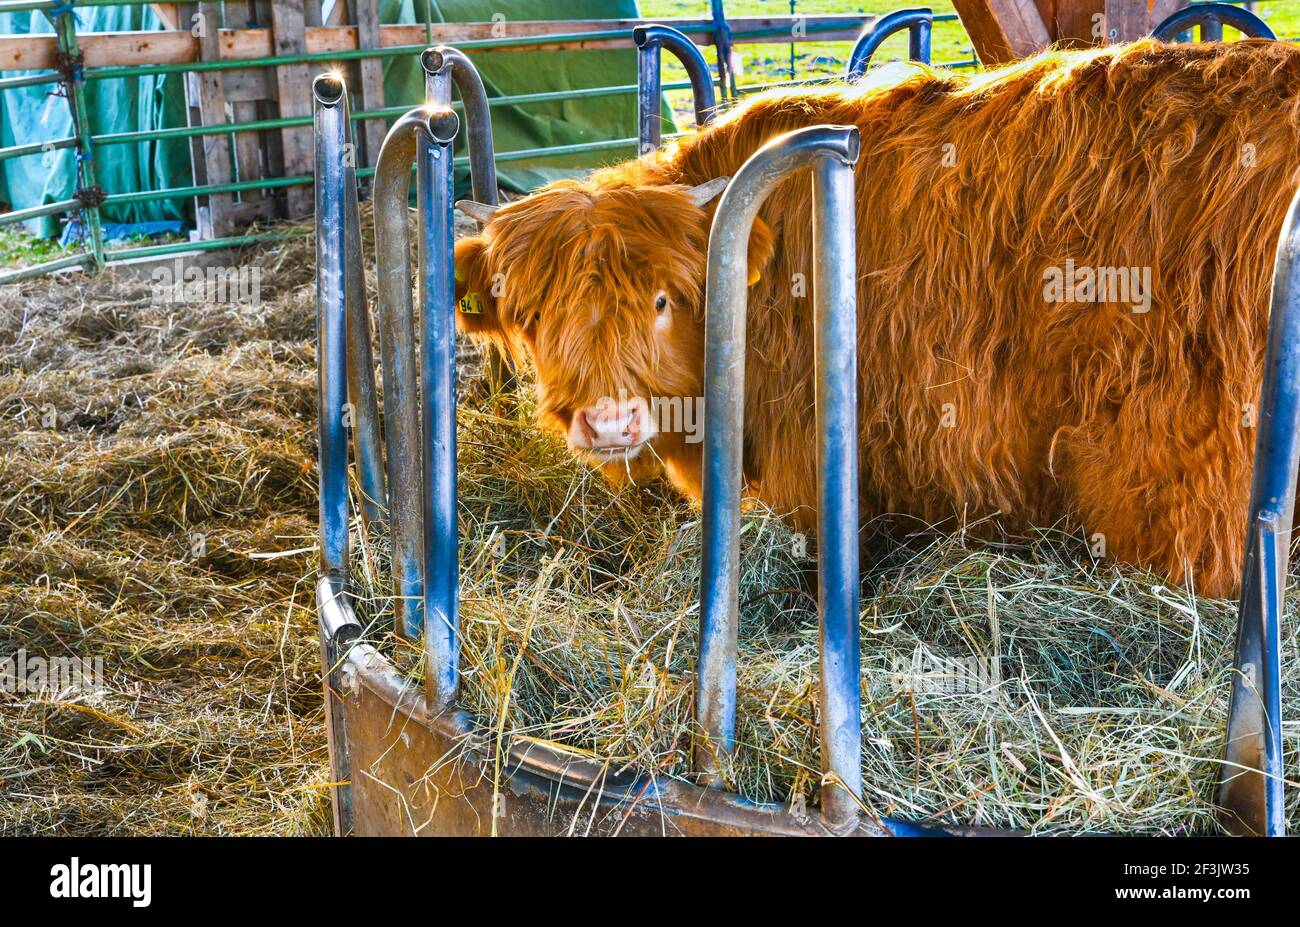 Vaches écossaises hautes terres en cours d'alimentation. Baden. Baden Wuerttemberg, Allemagne, Europe Banque D'Images